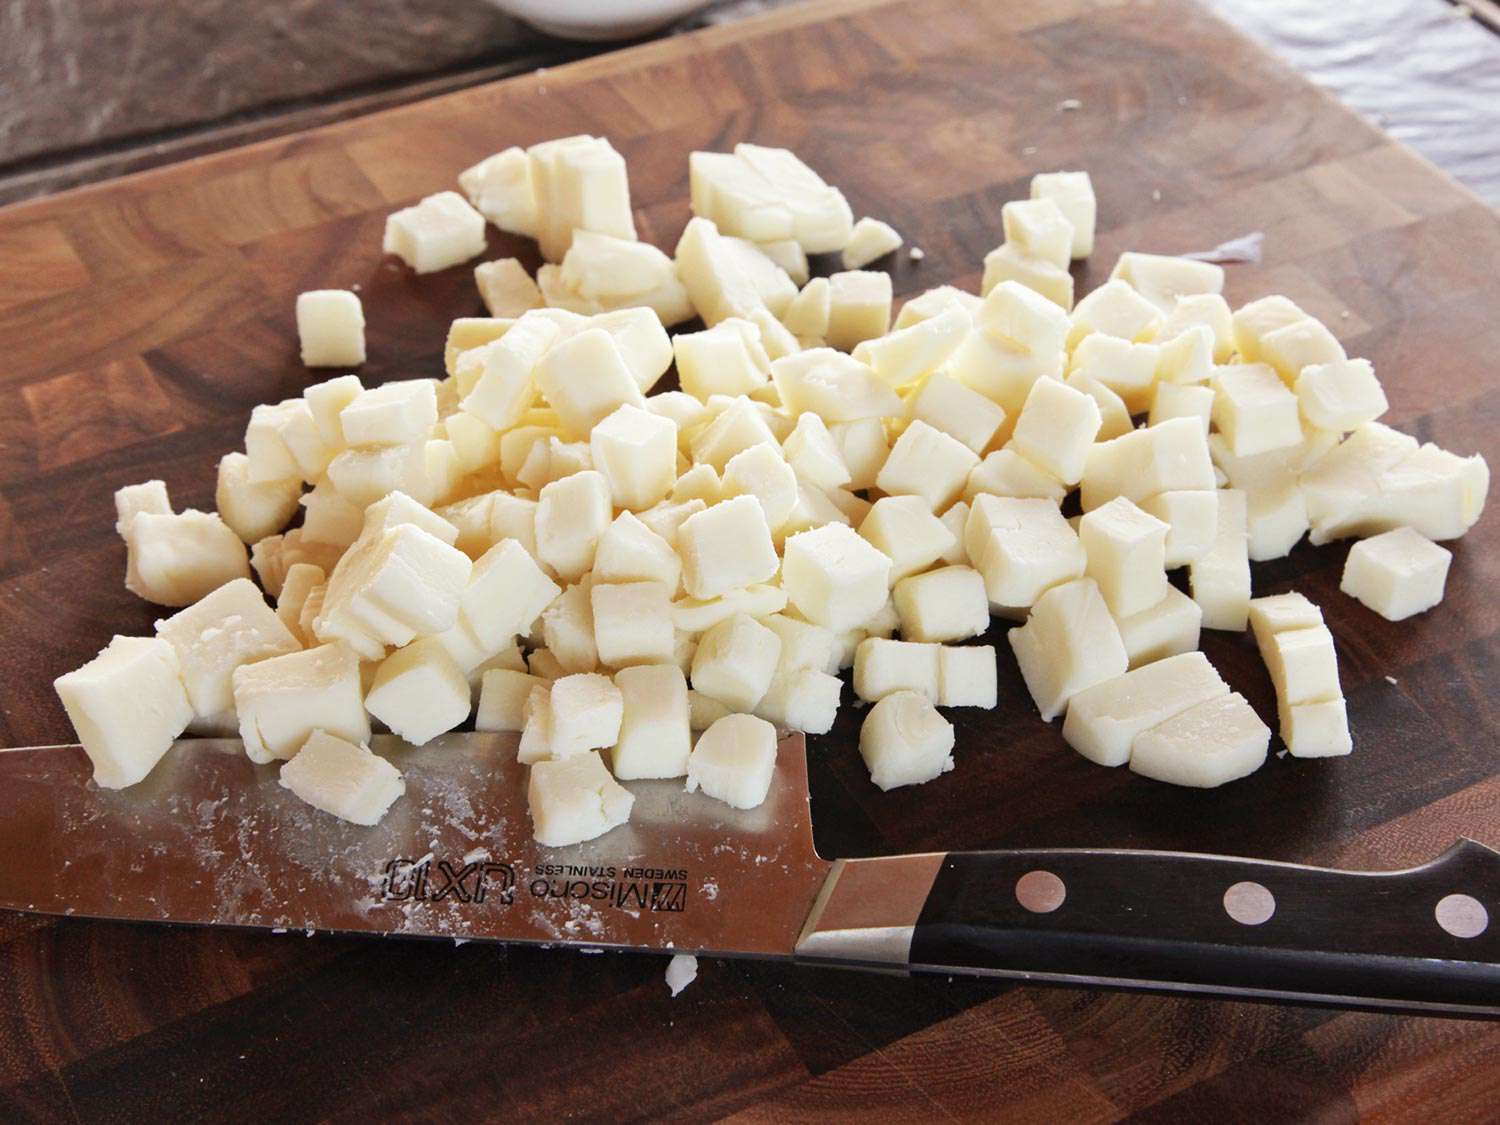 切菜板上放着几块低水分的马苏里拉奶酪，旁边是厨刀。